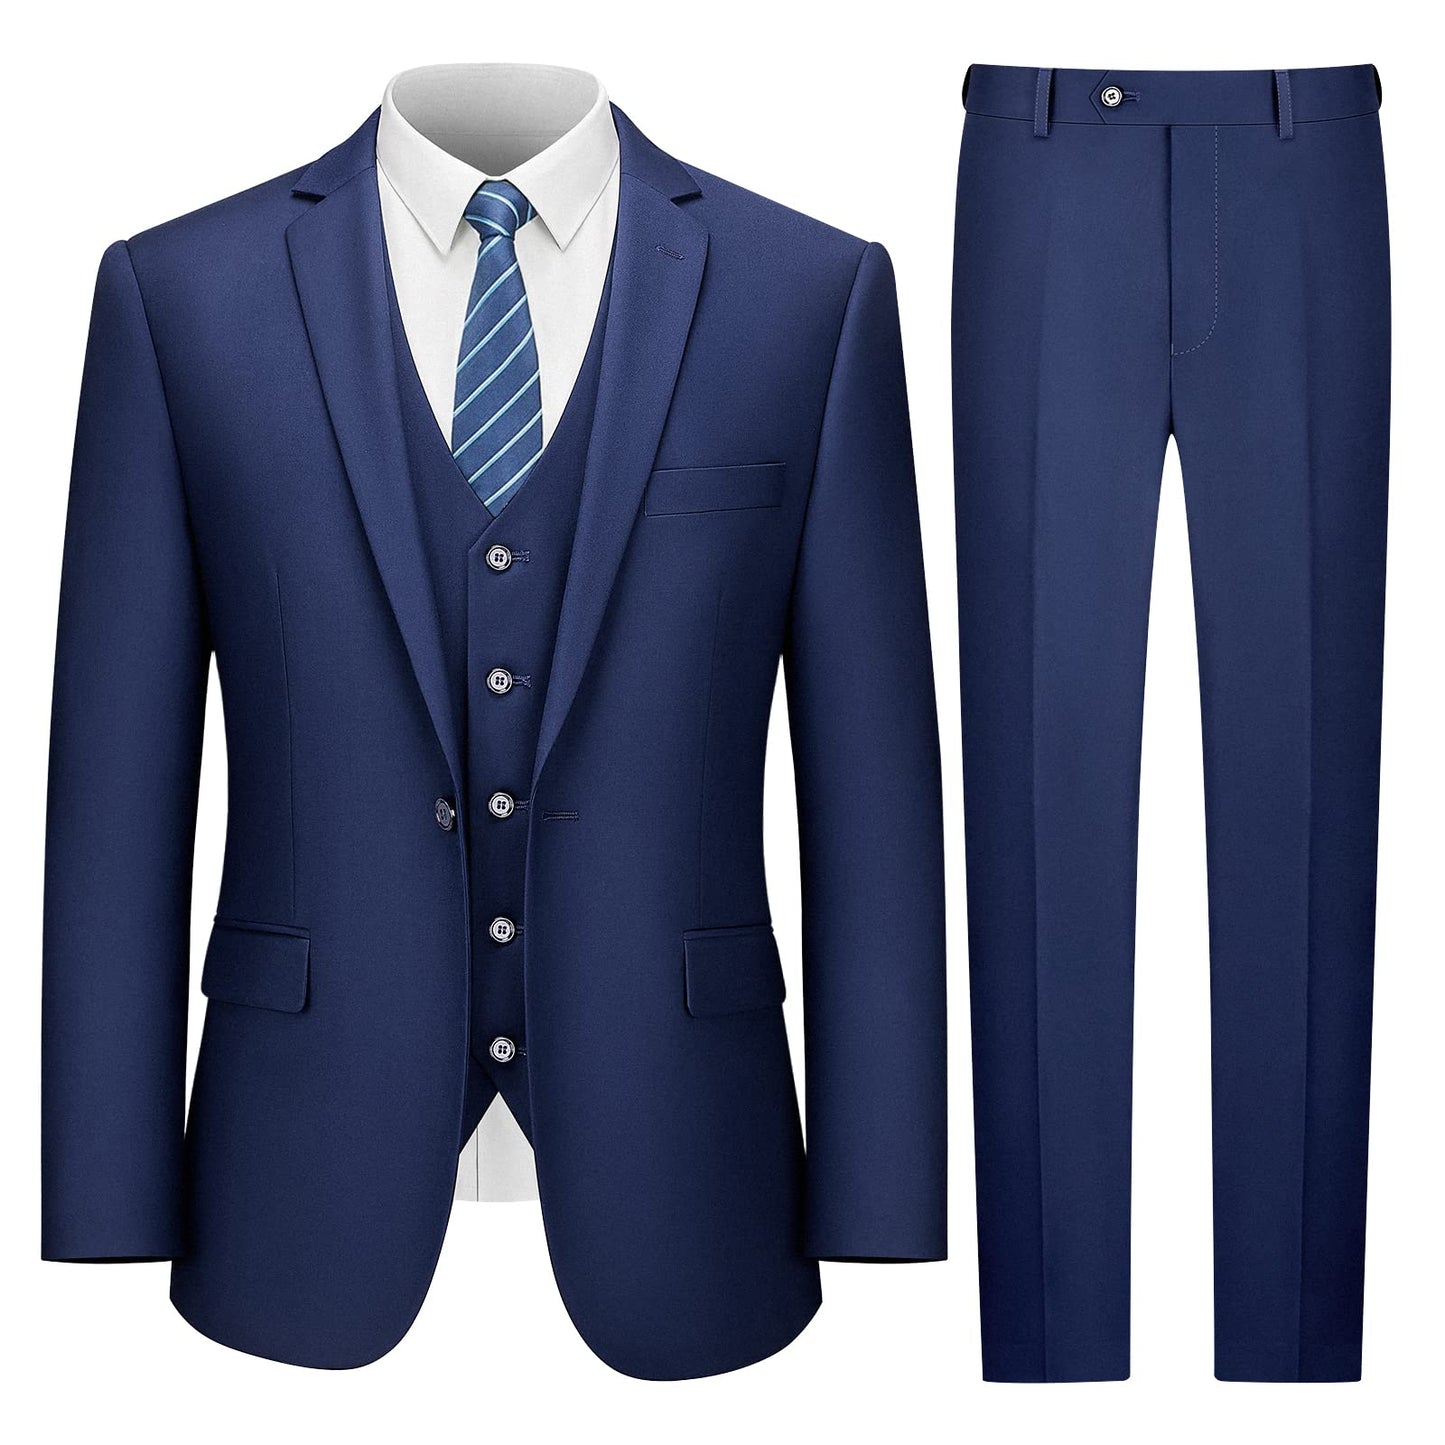 LUPURTY Suits for Men, 3 Piece Men's Suit Slim Fit, Solid Jacket Vest Pants with Tie, One Button Tuxedo Set, Navy Blue M